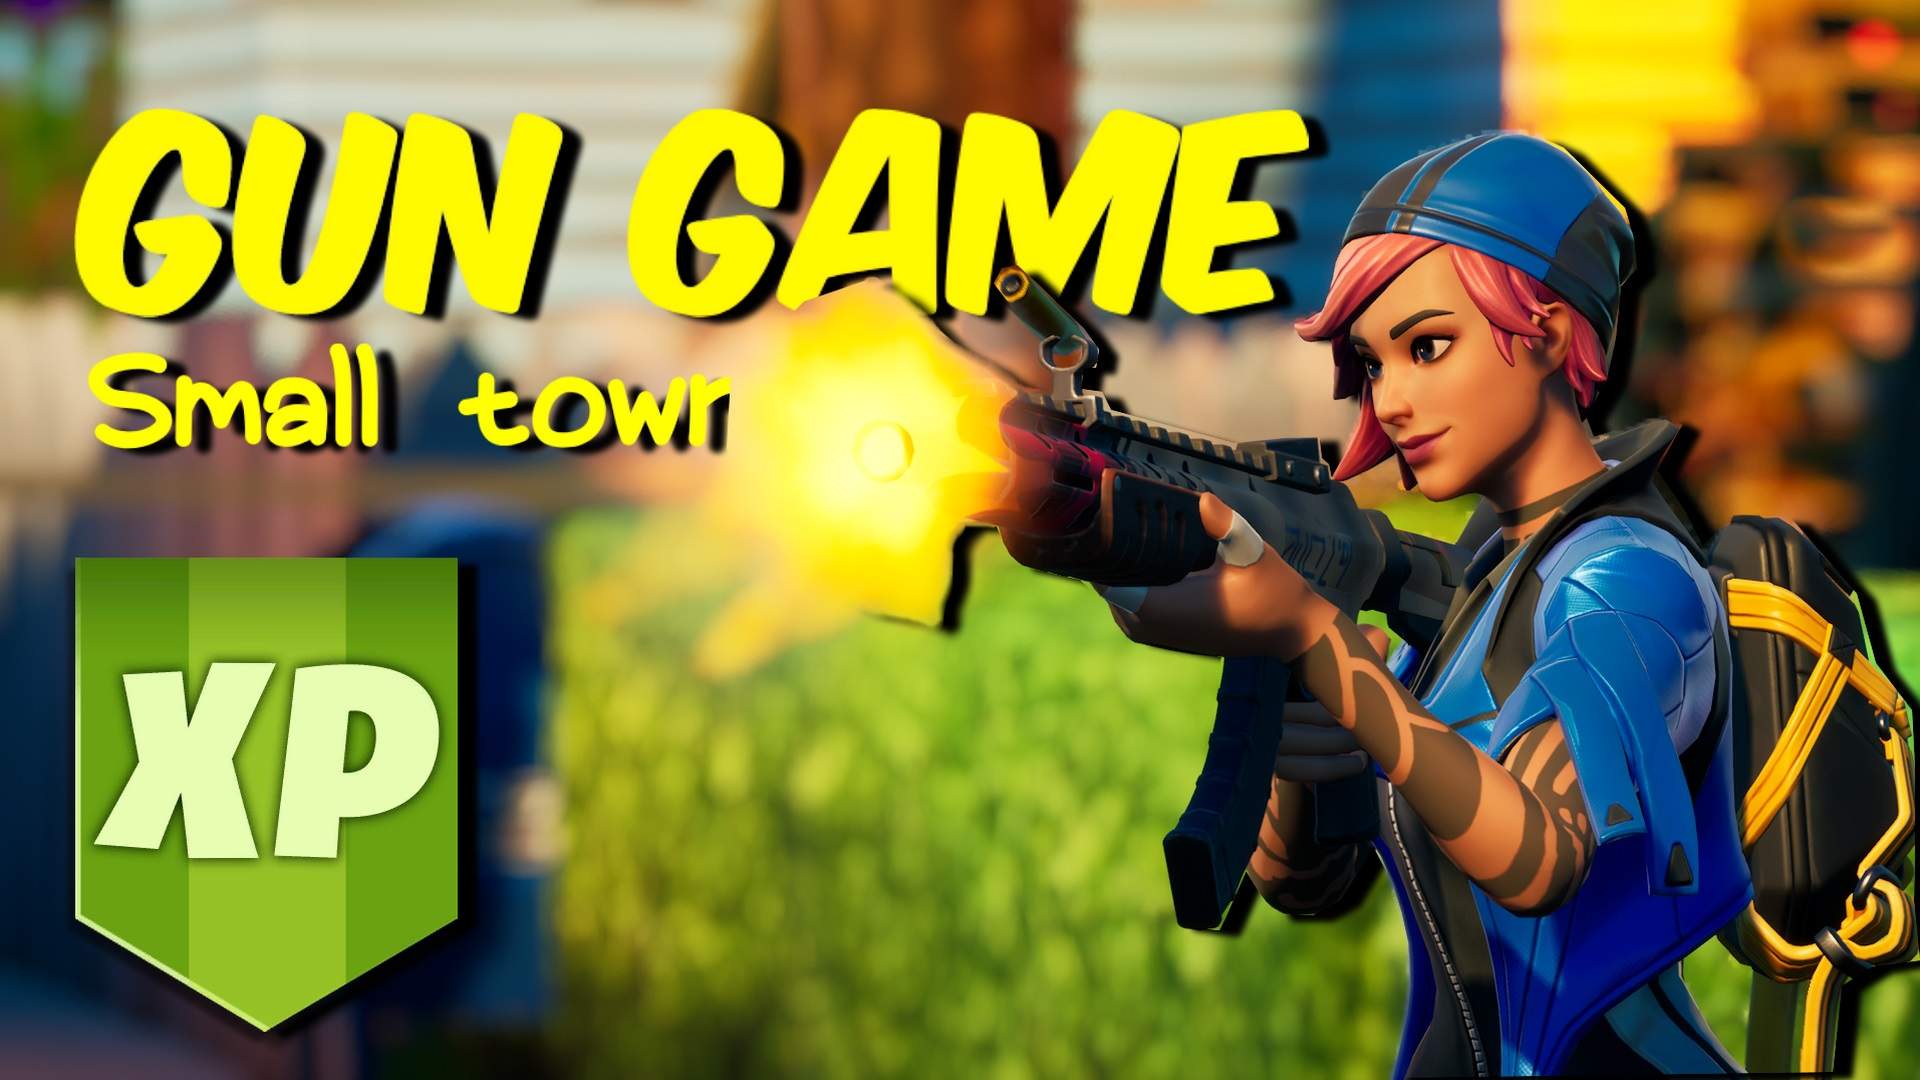 GUN GAME: SMALL TOWN